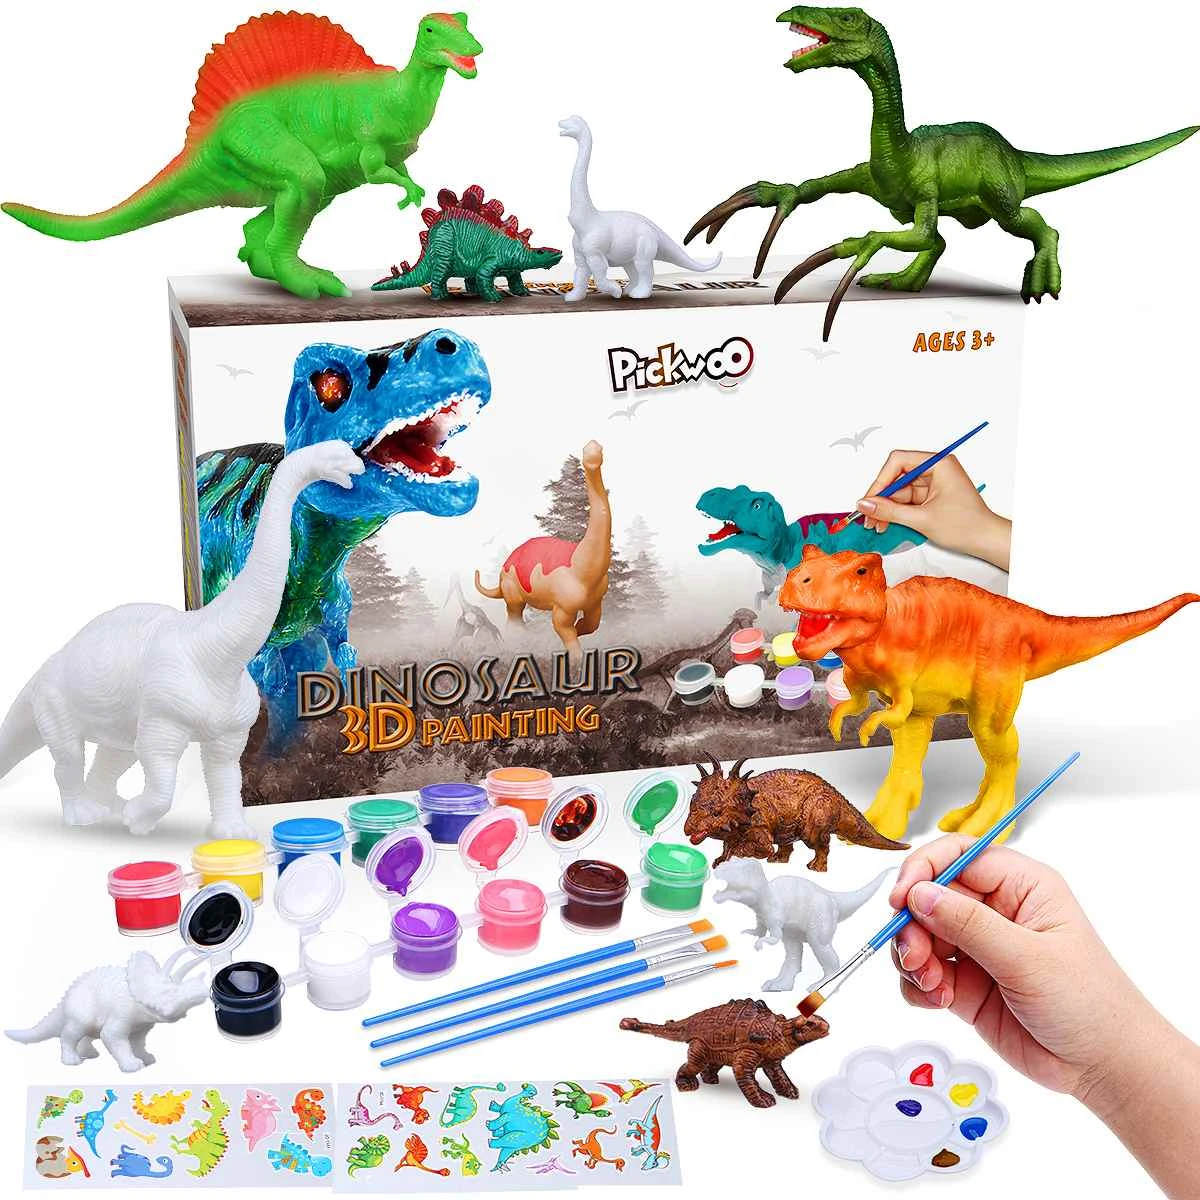 Pickwoo D02 3D dinosaurio pintura ciencia Set de cuadros con 12 Color  seguro no tóxico de Pascua regalos de artesanía juguete para niños varones  chicos chica|Juguetes para dibujar| - AliExpress